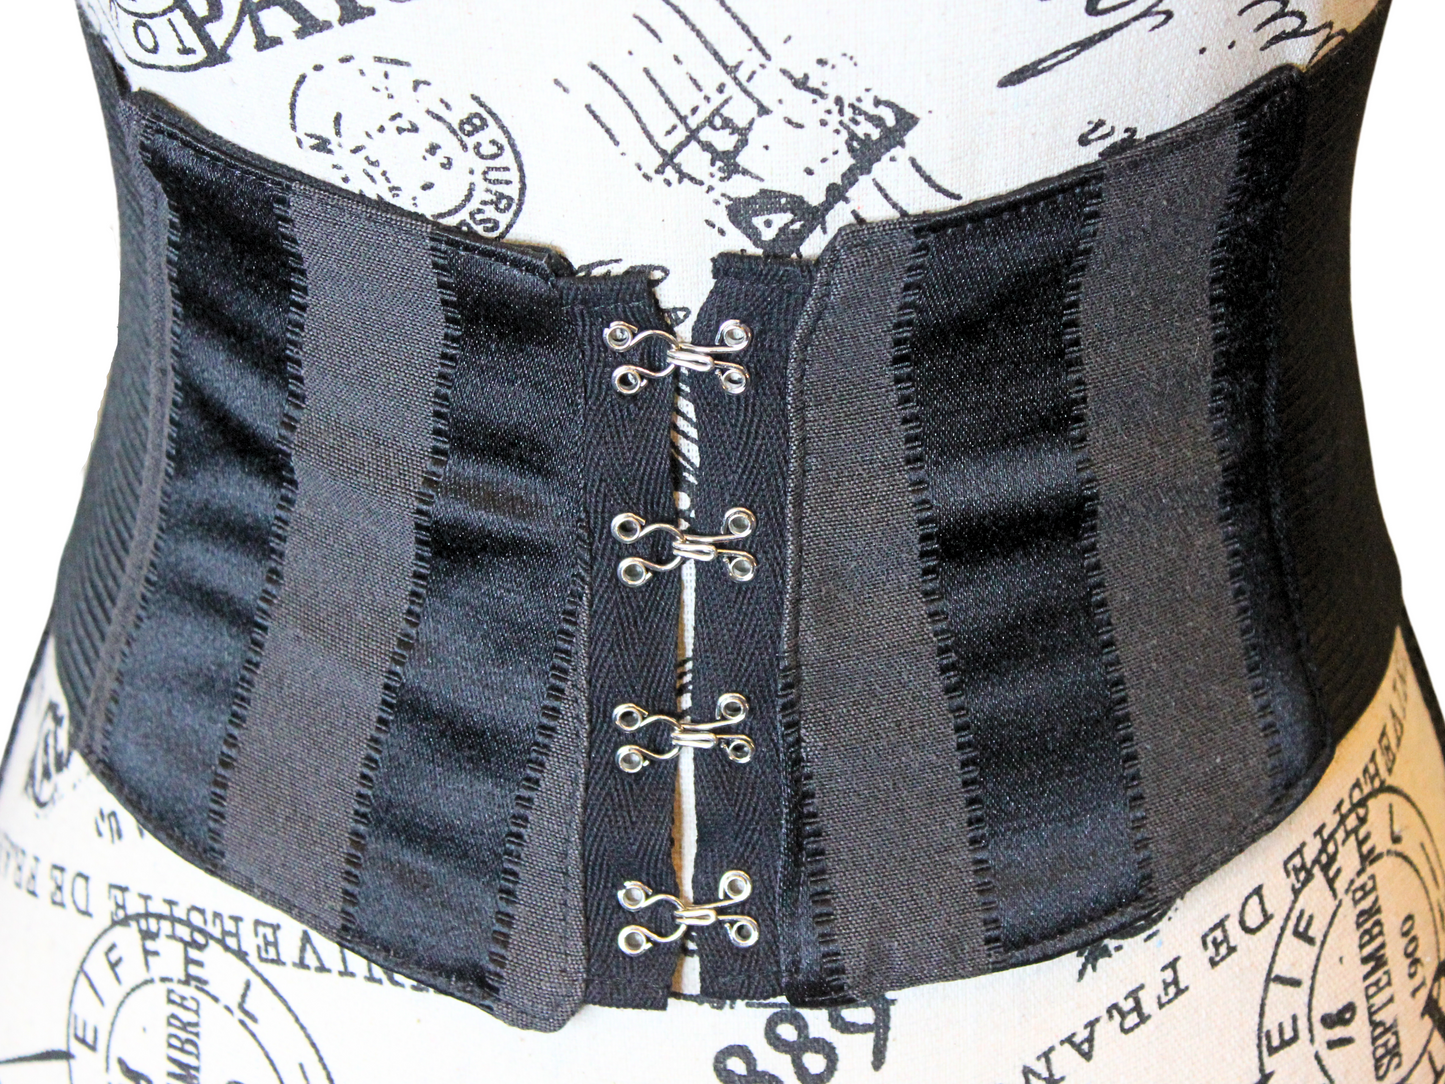 The VM Waist Belt